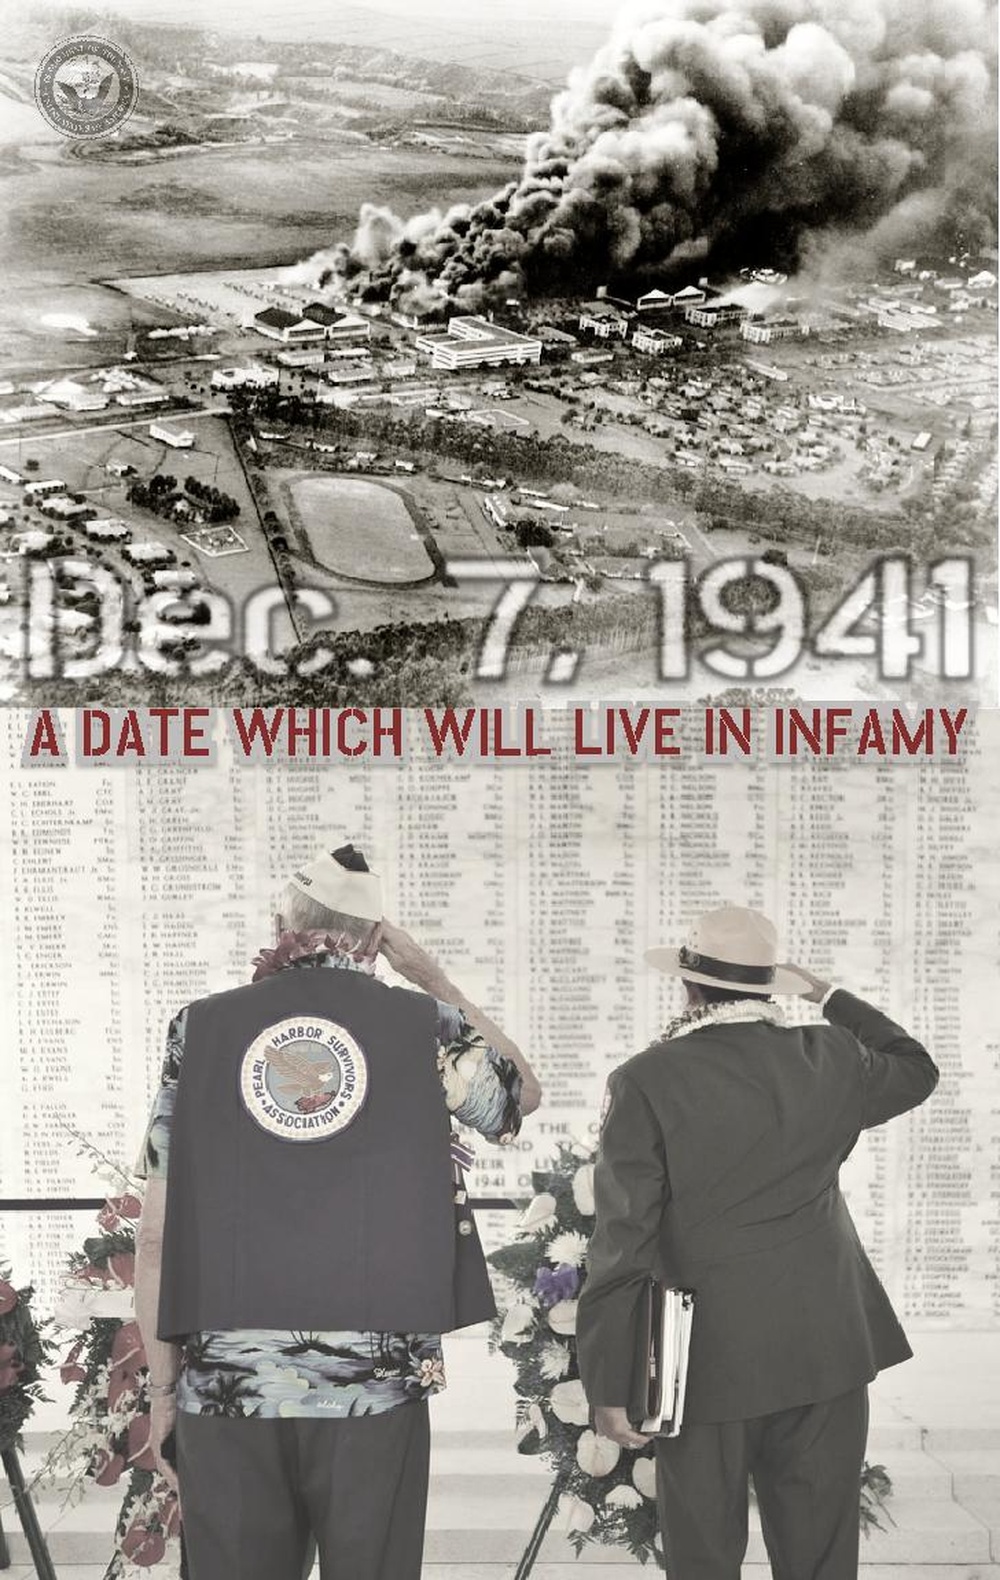 Pearl Harbor Remembered